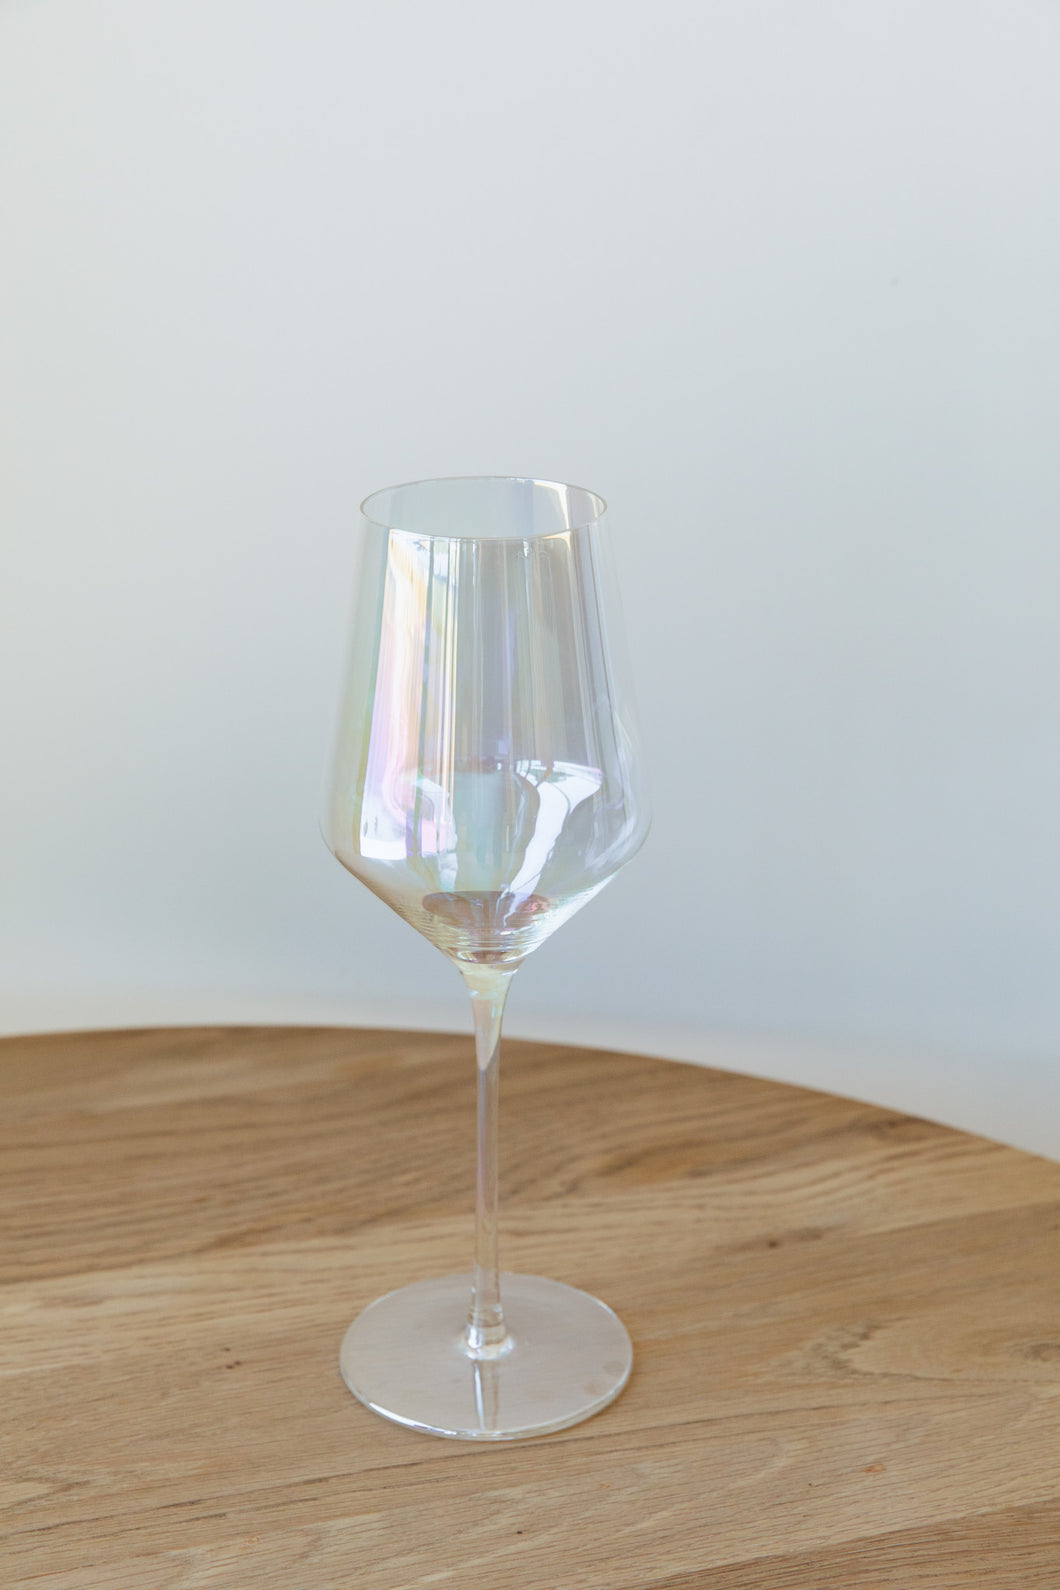 Iridescent | White Wine Glass